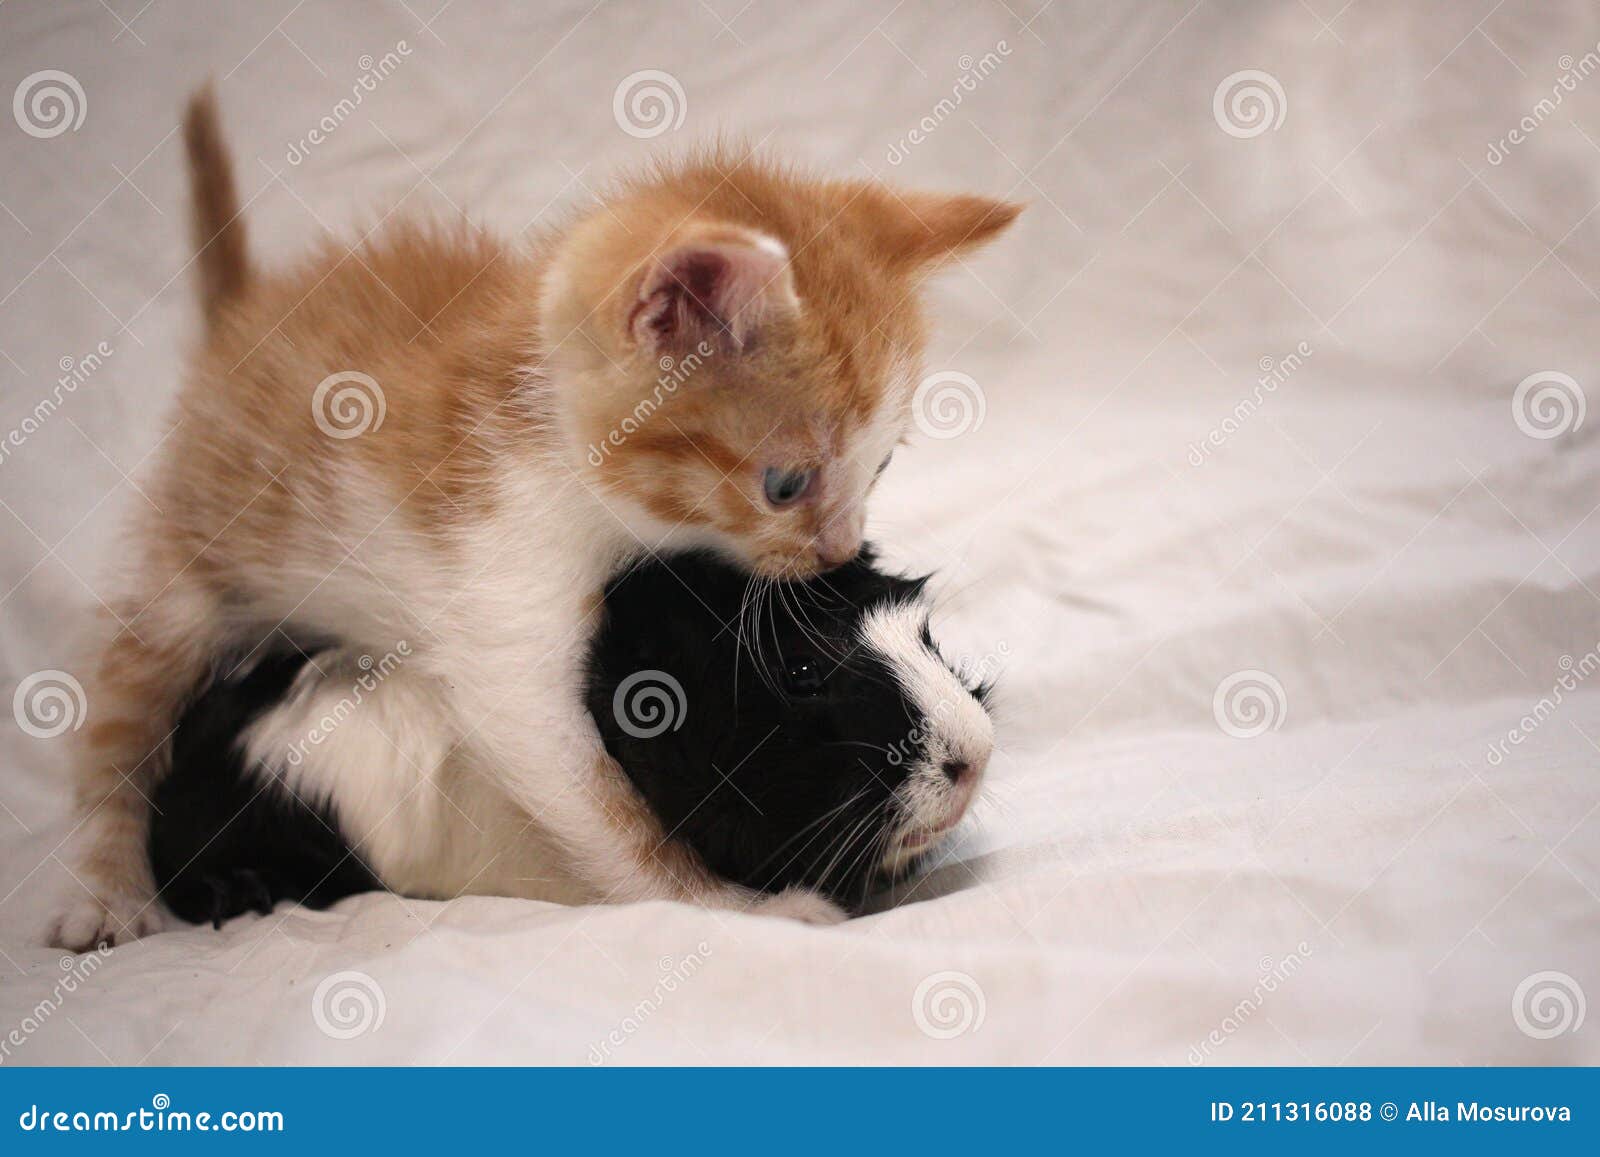 Kitten petplay